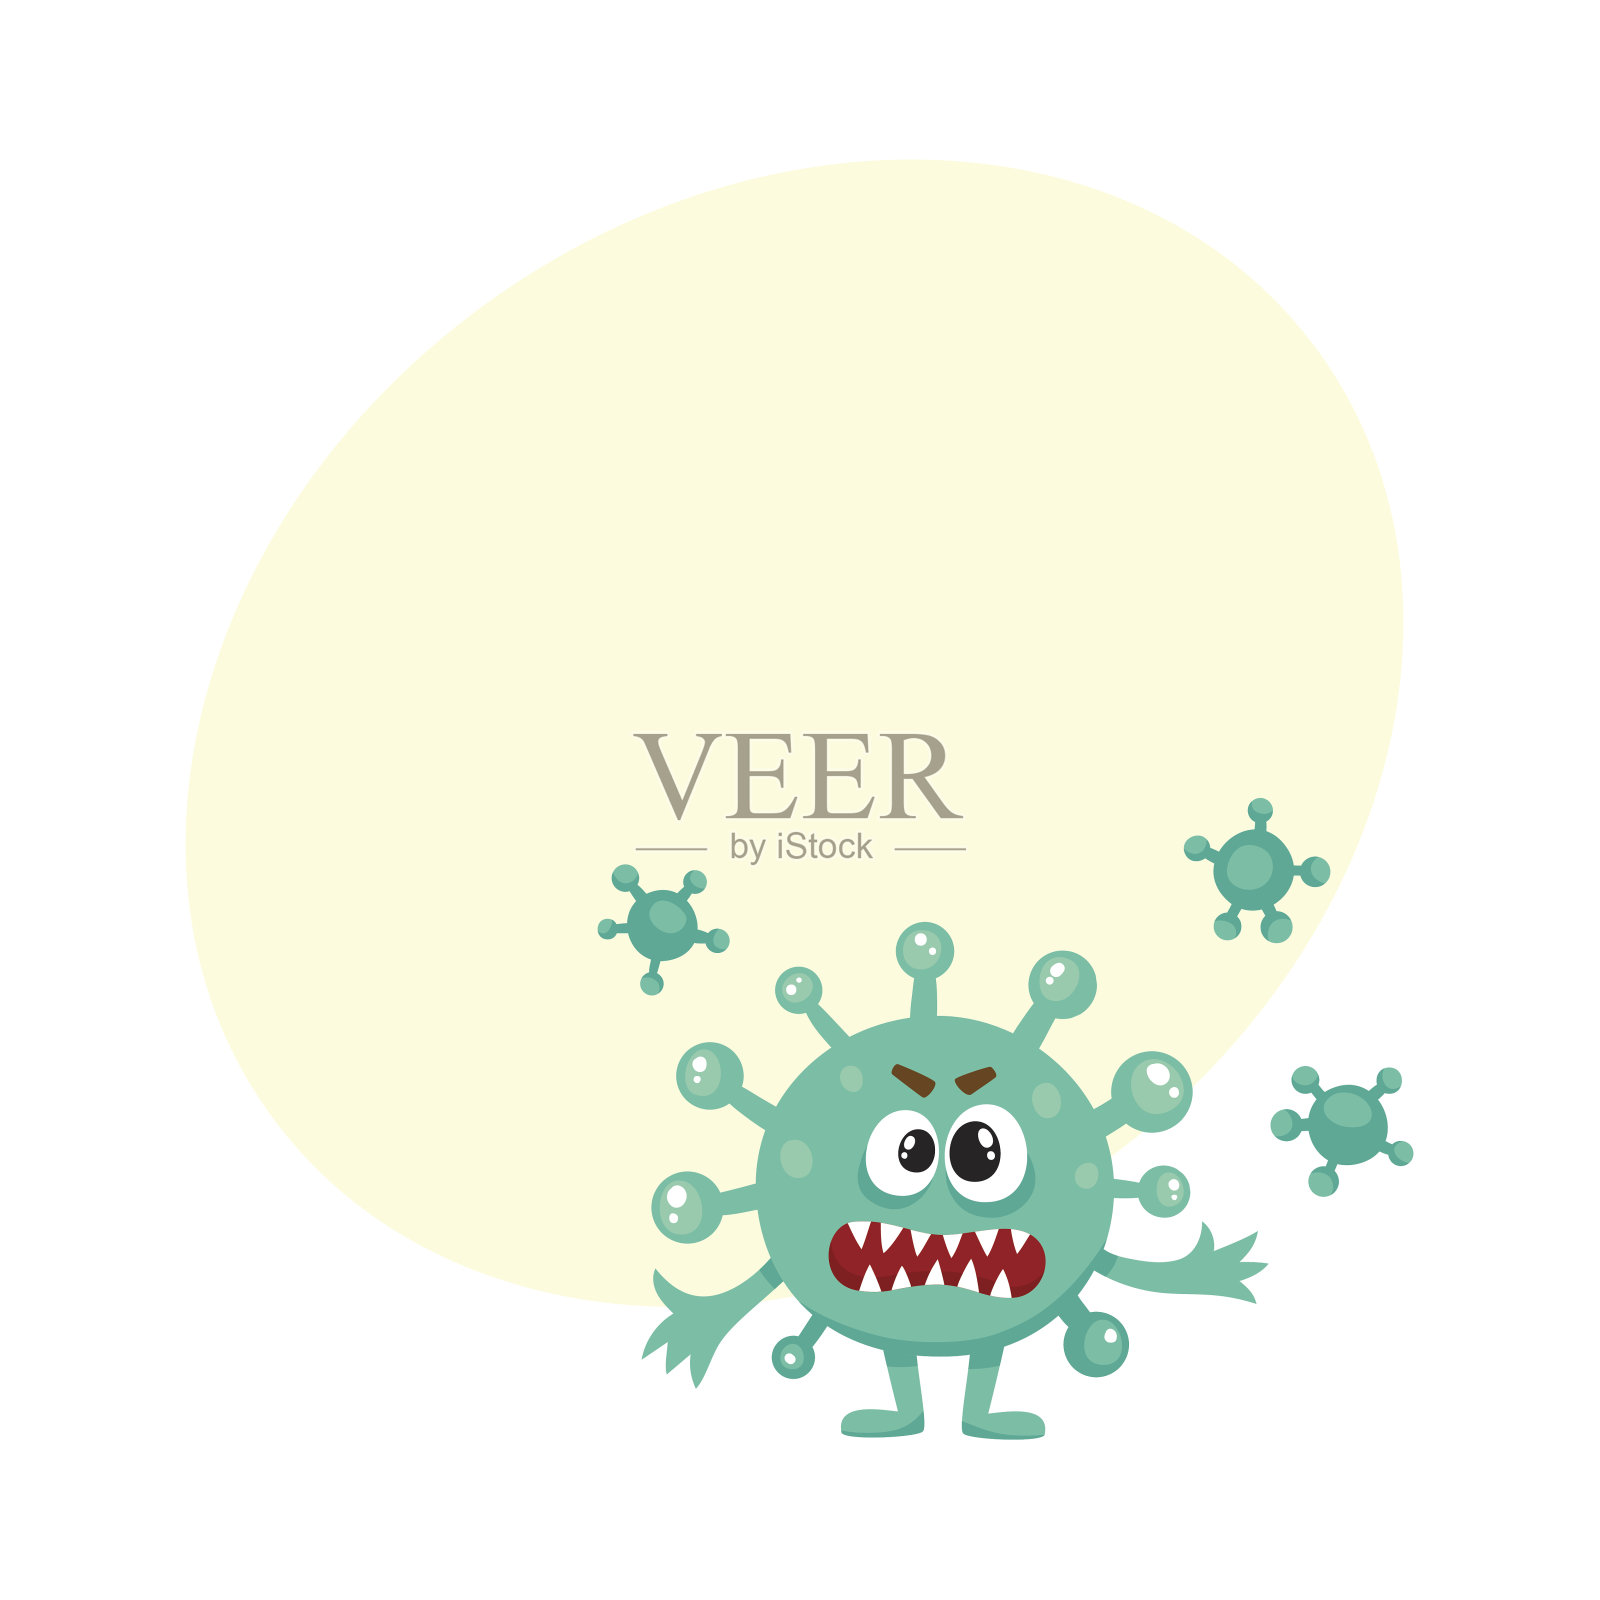 丑陋的绿色病毒、细菌、细菌具有人类面孔的特征插画图片素材